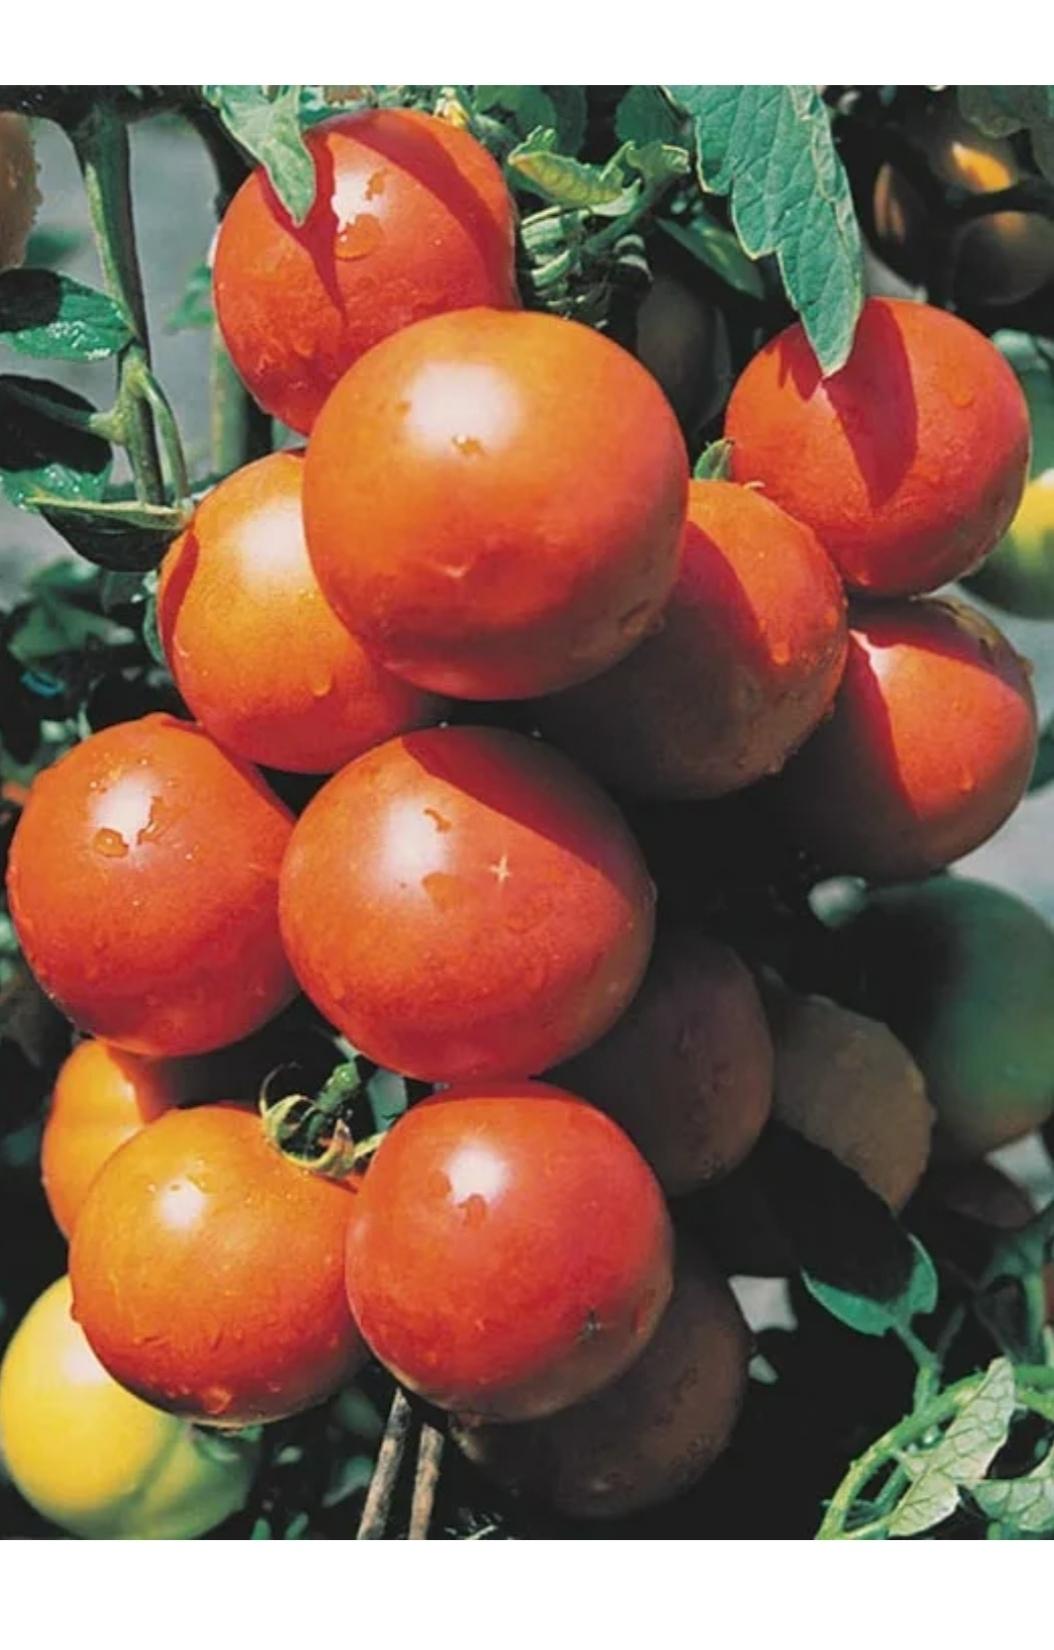 Семена томат Яблонька России